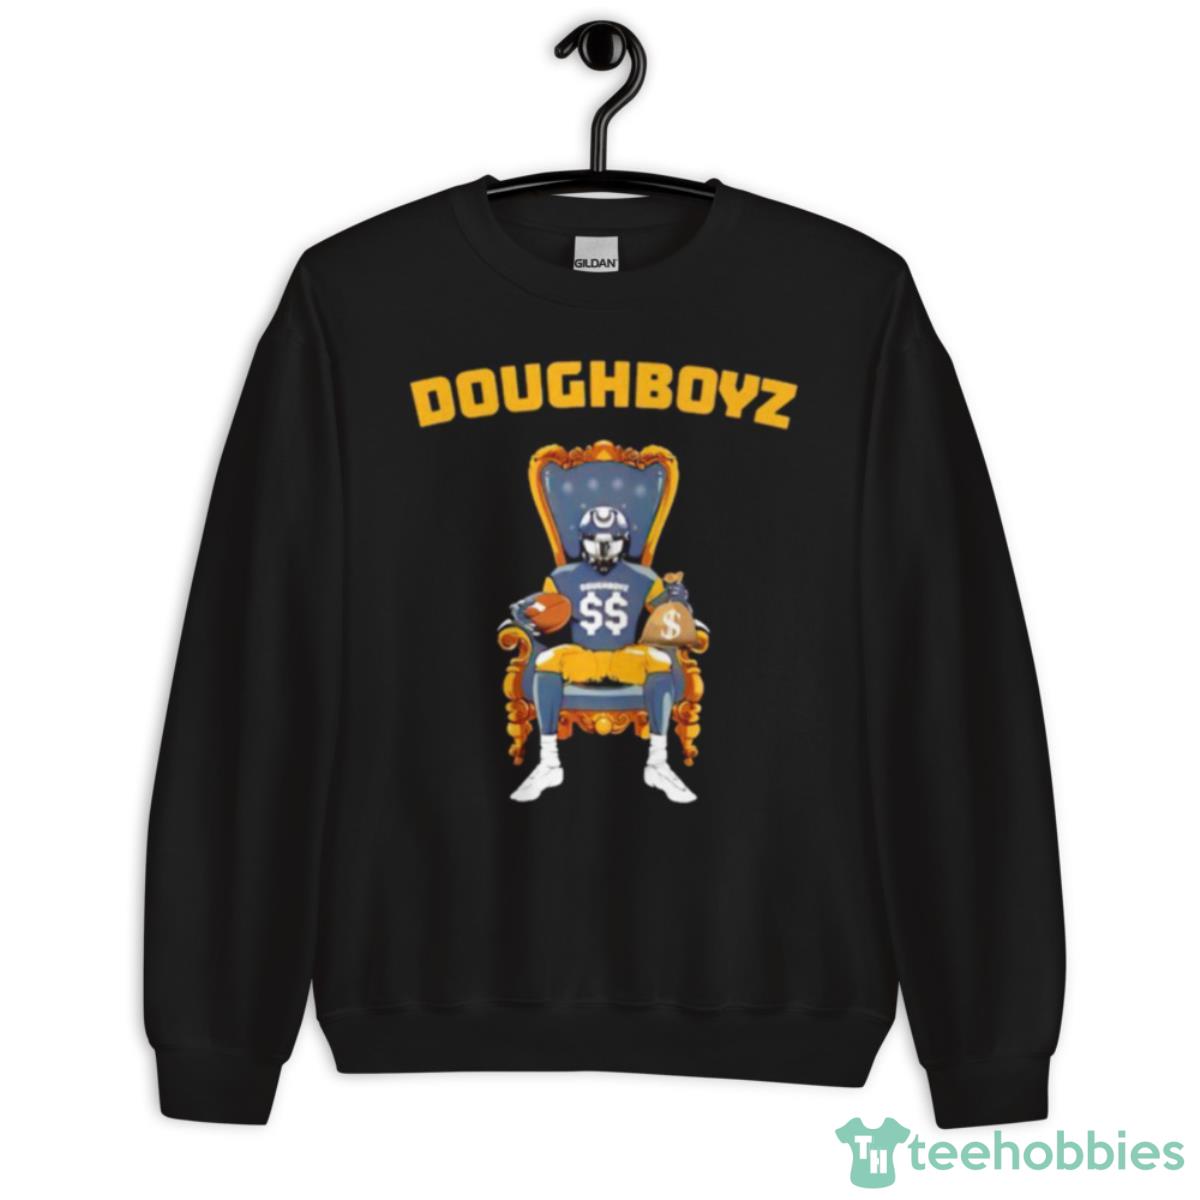 Iowa Hawkeyes Doughboyz Shirt - Unisex Crewneck Sweatshirt